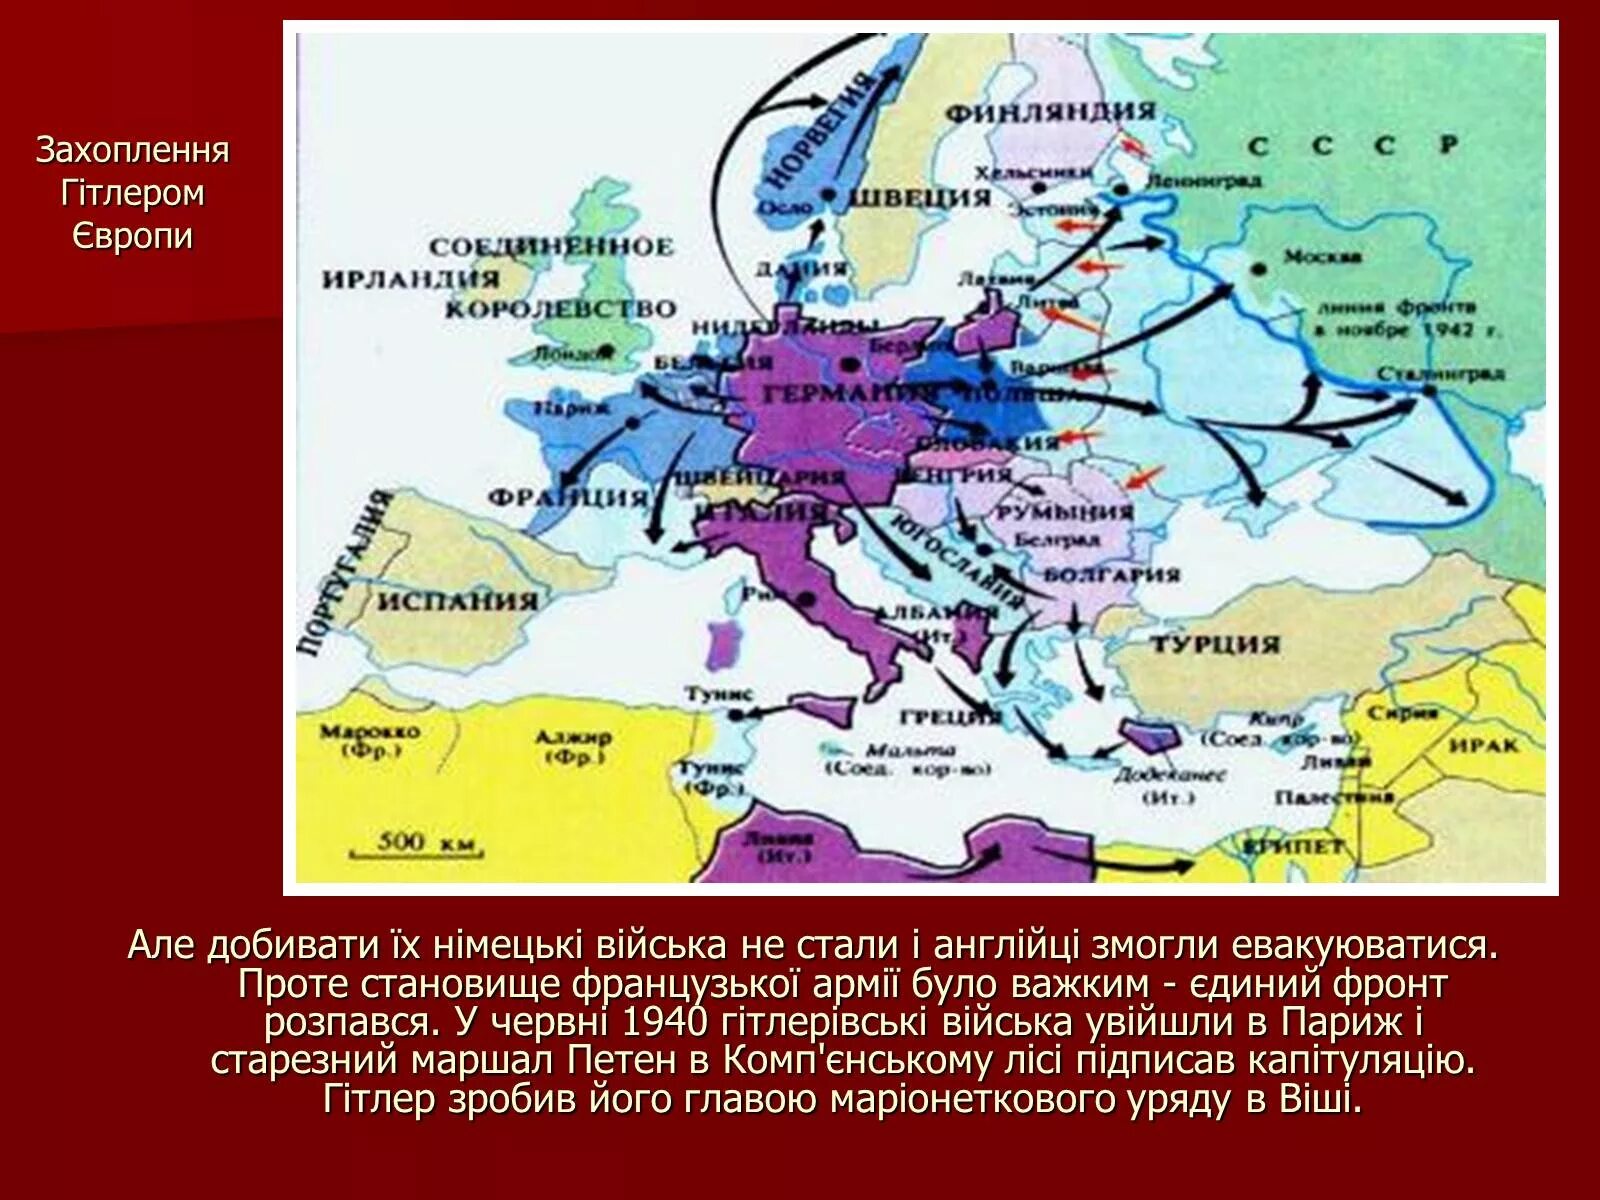 Какие страны захватила германия к 1940. Захват фашистами стран Европы карта. Захват Европы Германией карта. Карта захватов Германии до второй мировой войны. Страны оккупированные Германией.